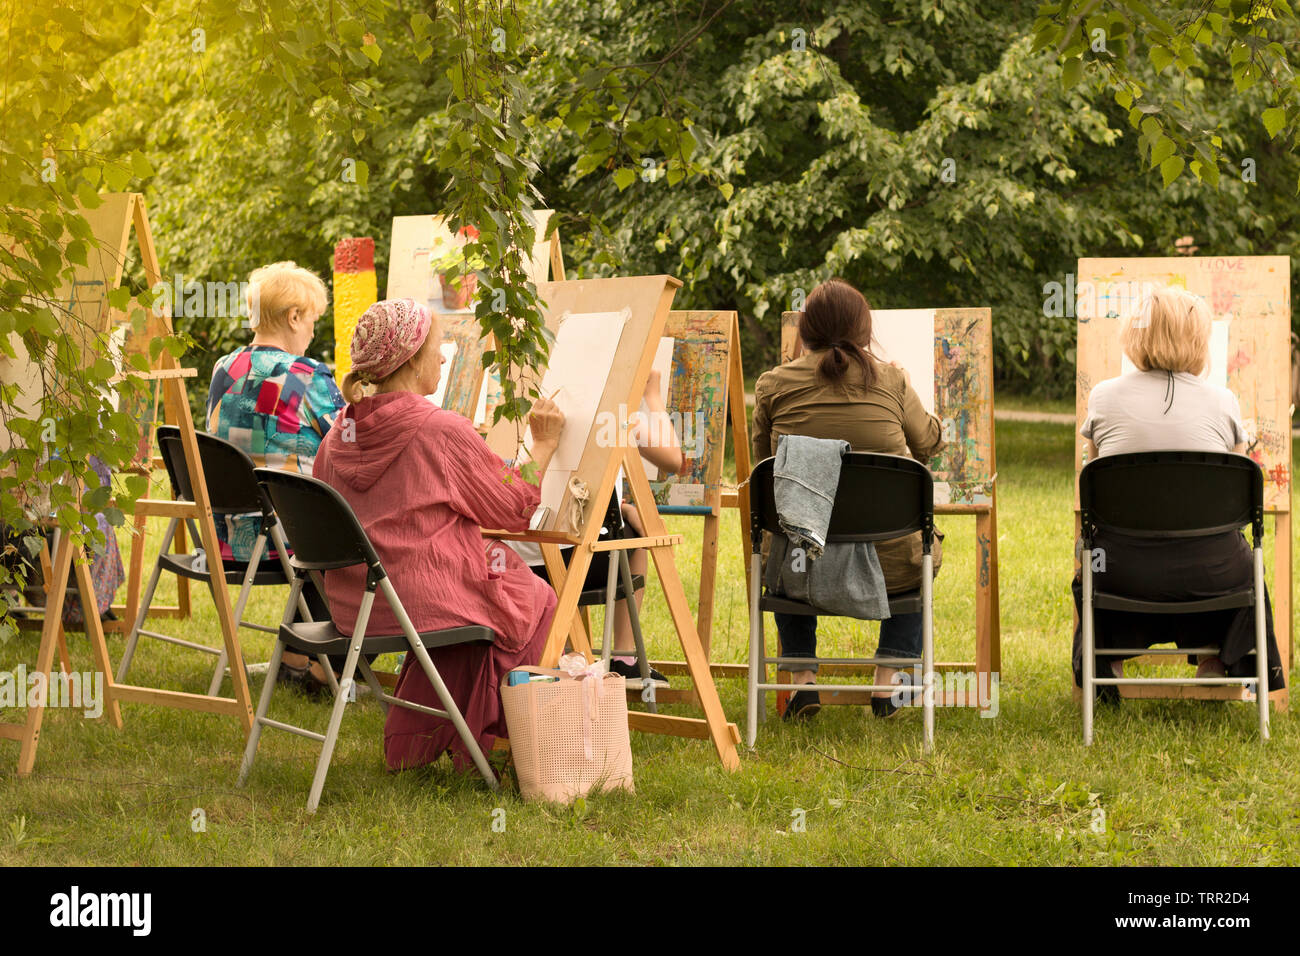 Les femmes de la haute école d'art de la peinture en studio pour les personnes âgées. Moscou - 1er juin 2019. Jour d'été ensoleillé Banque D'Images